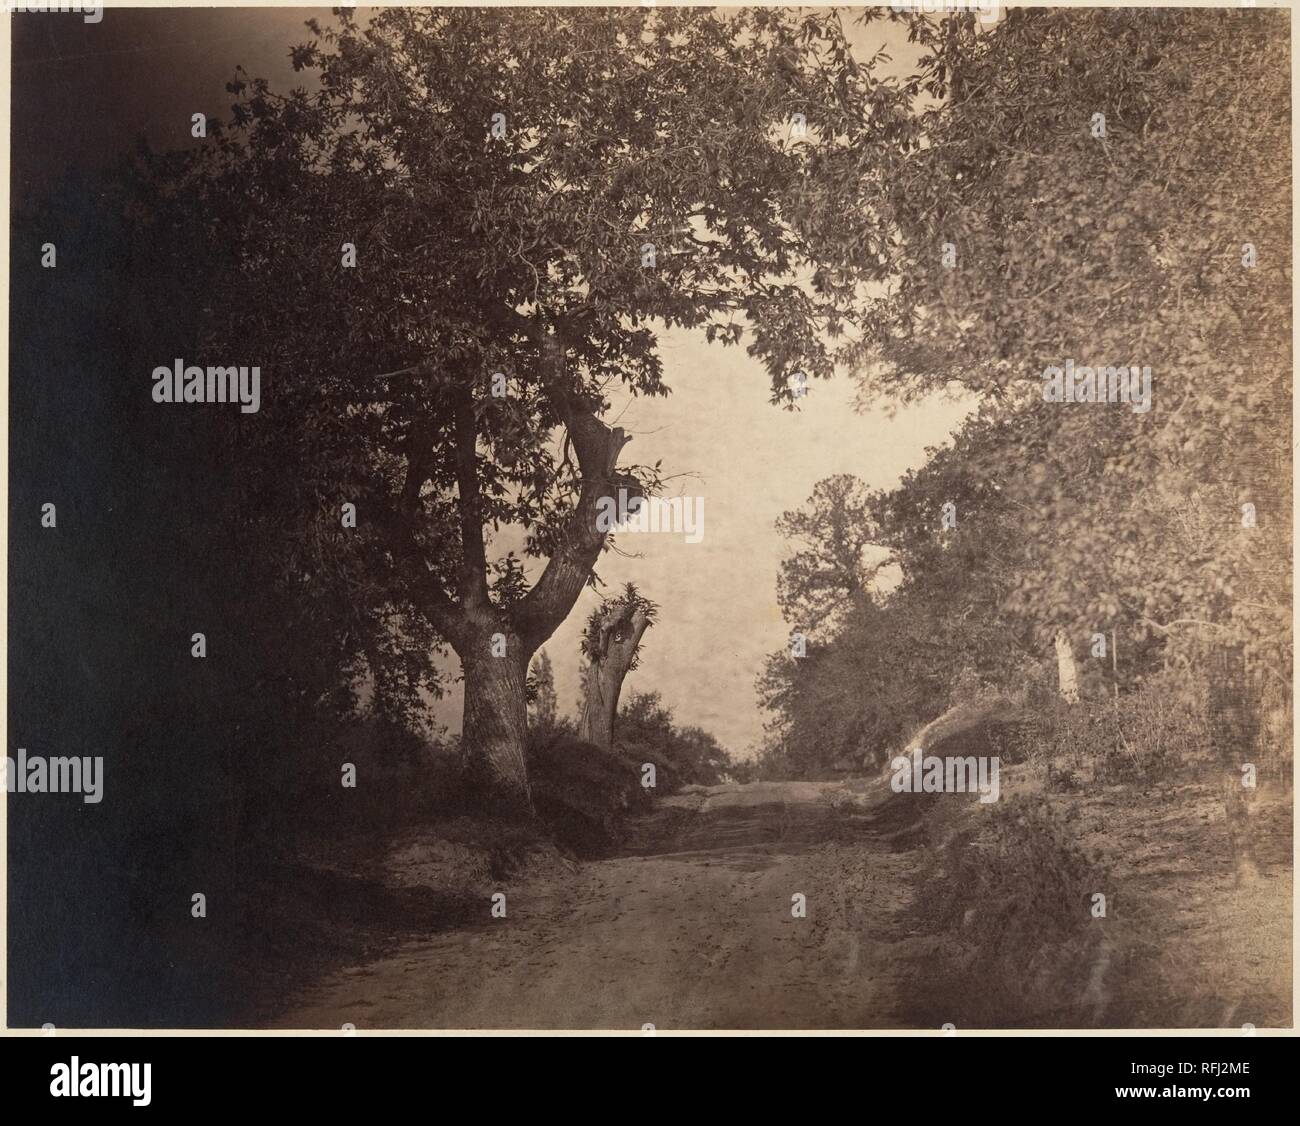 Fontainebleau, Chemin sablonneux Montant. Artist: Gustave Le Gray (Französisch, 1820-1884). Abmessungen: Bild: 29,9 x 37,7 cm (11 3/4 x 14 13/16 in.) anbringen: 53,3 x 63,8 cm (21 x 25 1/8 in.). Datum: Ca. 1856. Le Gray zurück in den Wald von Fontainebleau in der Mitte der 1850er mit einer grösseren Kamera und glasnegative. Im Gegensatz zu den flackernden Abstraktion seiner früheren Ansicht (Nr. 62), dieses Bild übersetzt die Erfahrungen der Bewegung durch den Wald in einer Kühn orchestrierte Komposition. Nach dem sandigen Weg gerade zurück von der Bildebene, den Viewer schreitet von undurchdringlichen Schatten Stockfoto